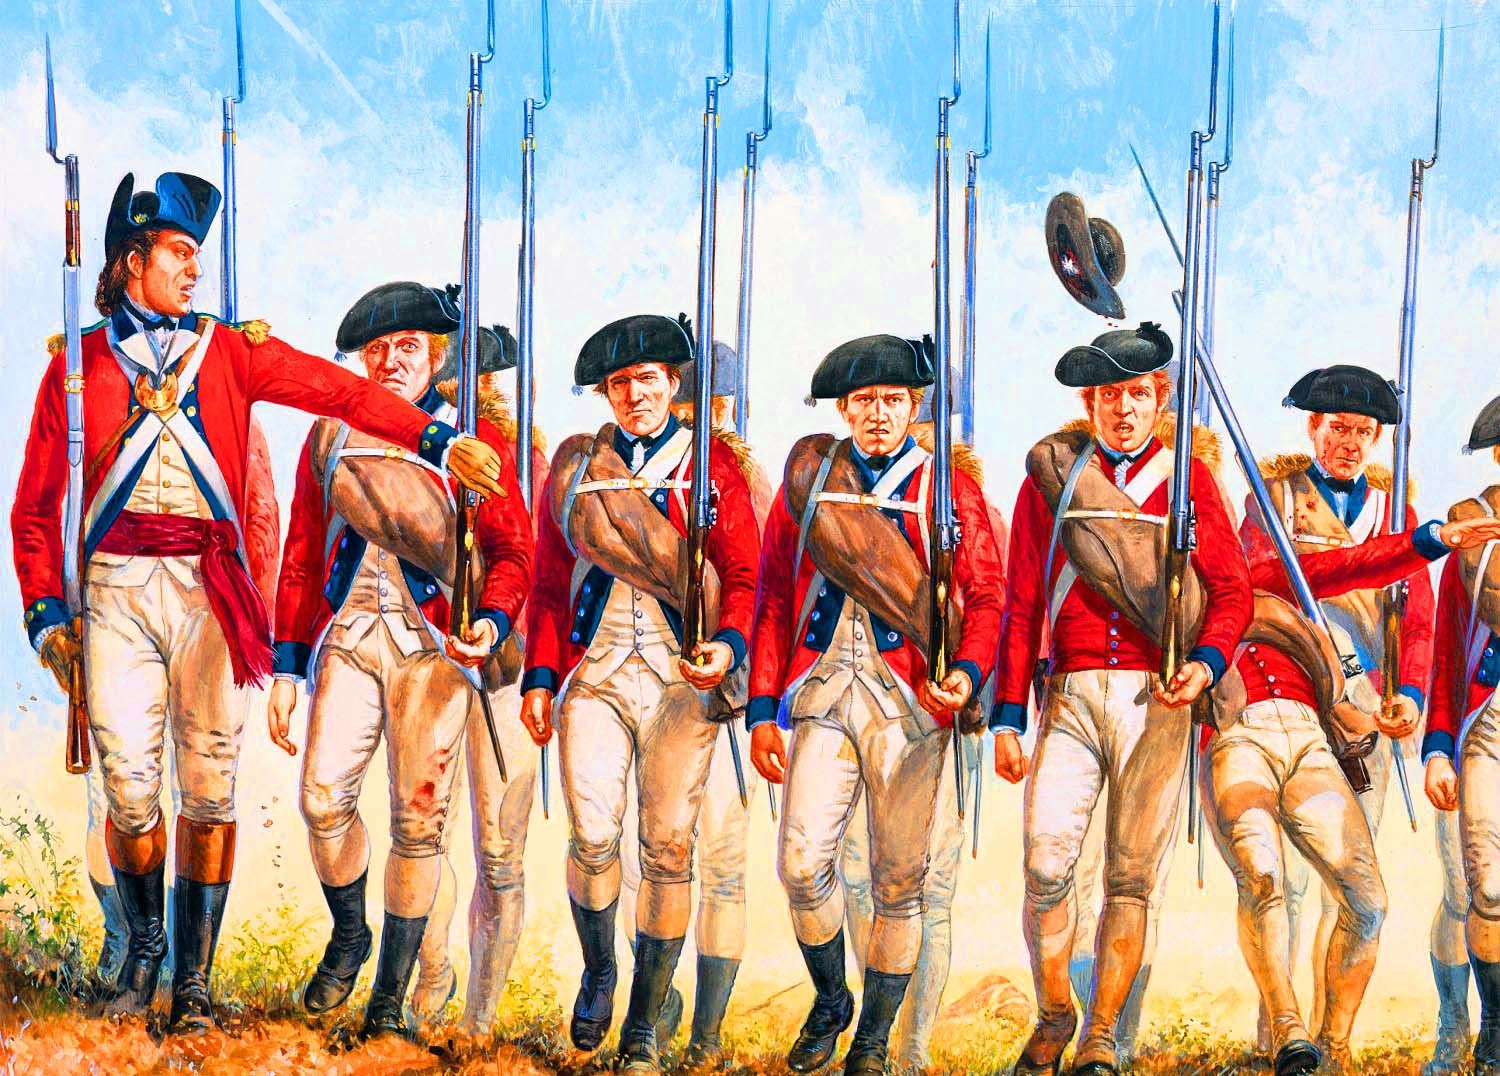 Uk 18. Британская армия в войне за независимость США. Британская униформа войны за независимость США. Французская колониальная линейная пехота 18 века. Британские войска 18 века колониальные.